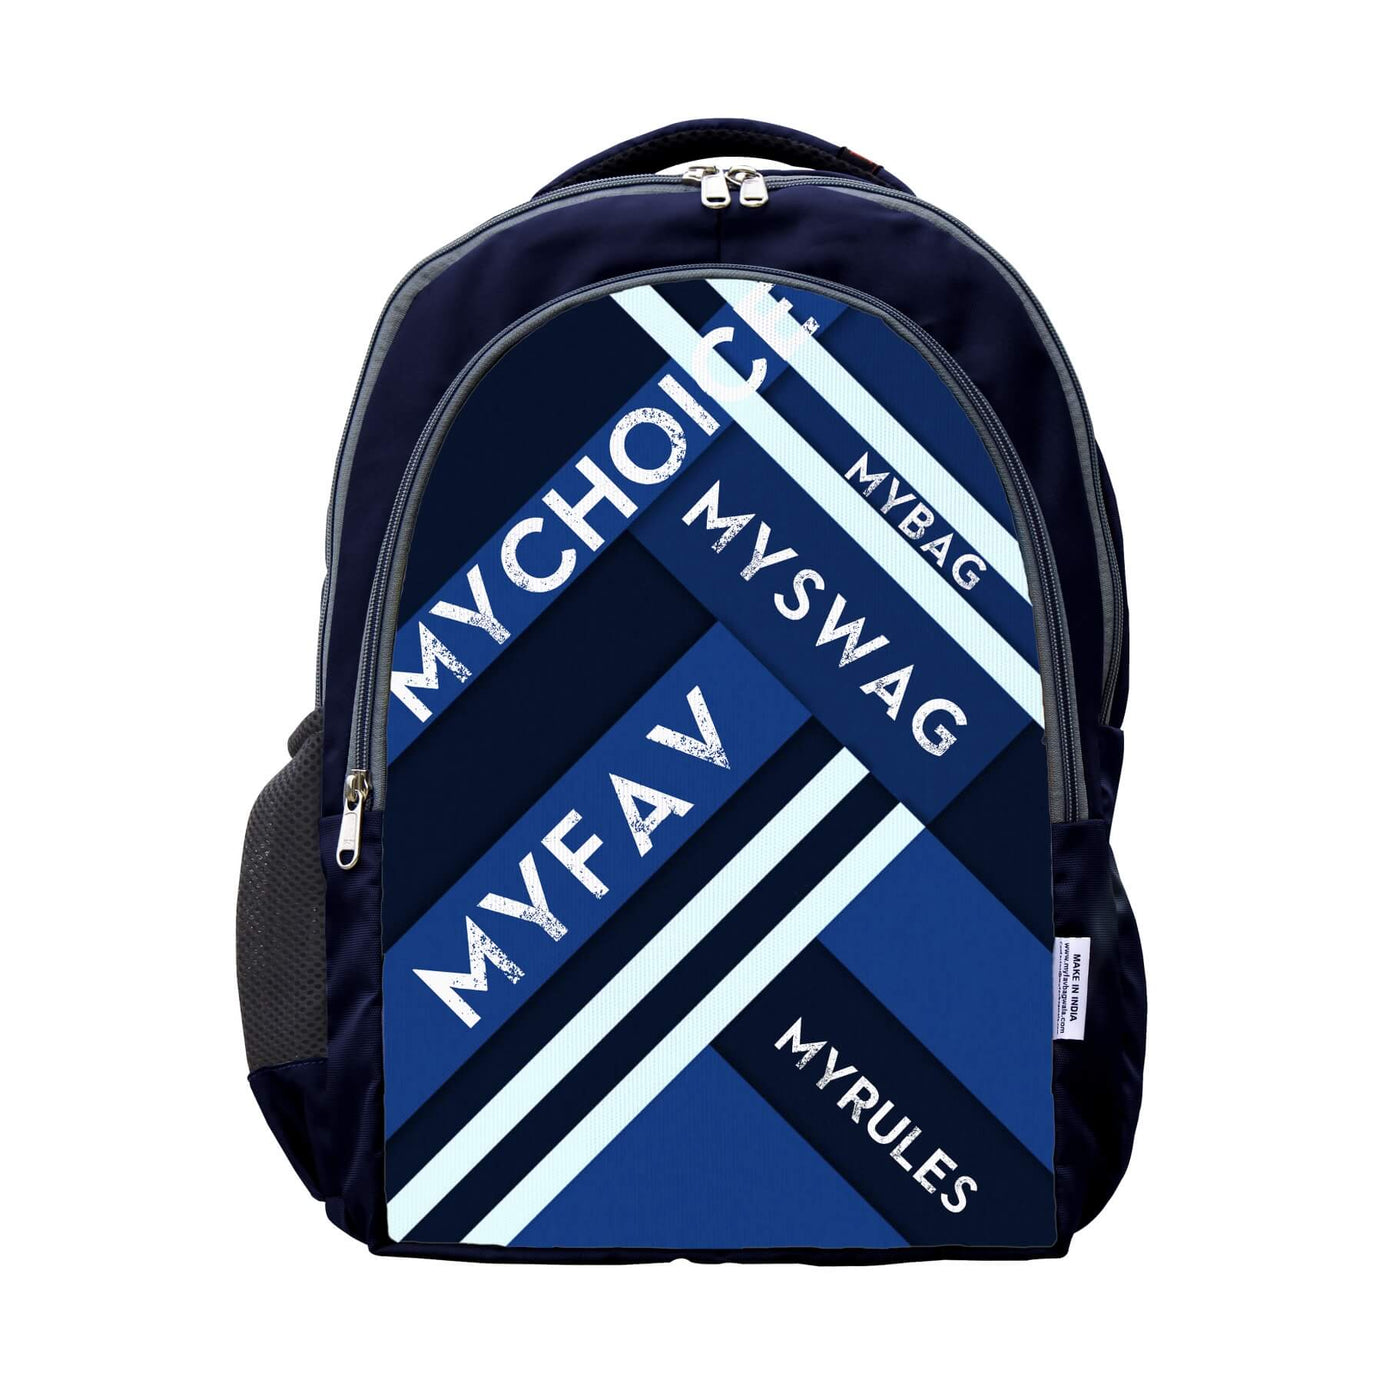 My Fav Striped Laptop Backpack For Men Women / School Bag for Boys Girls